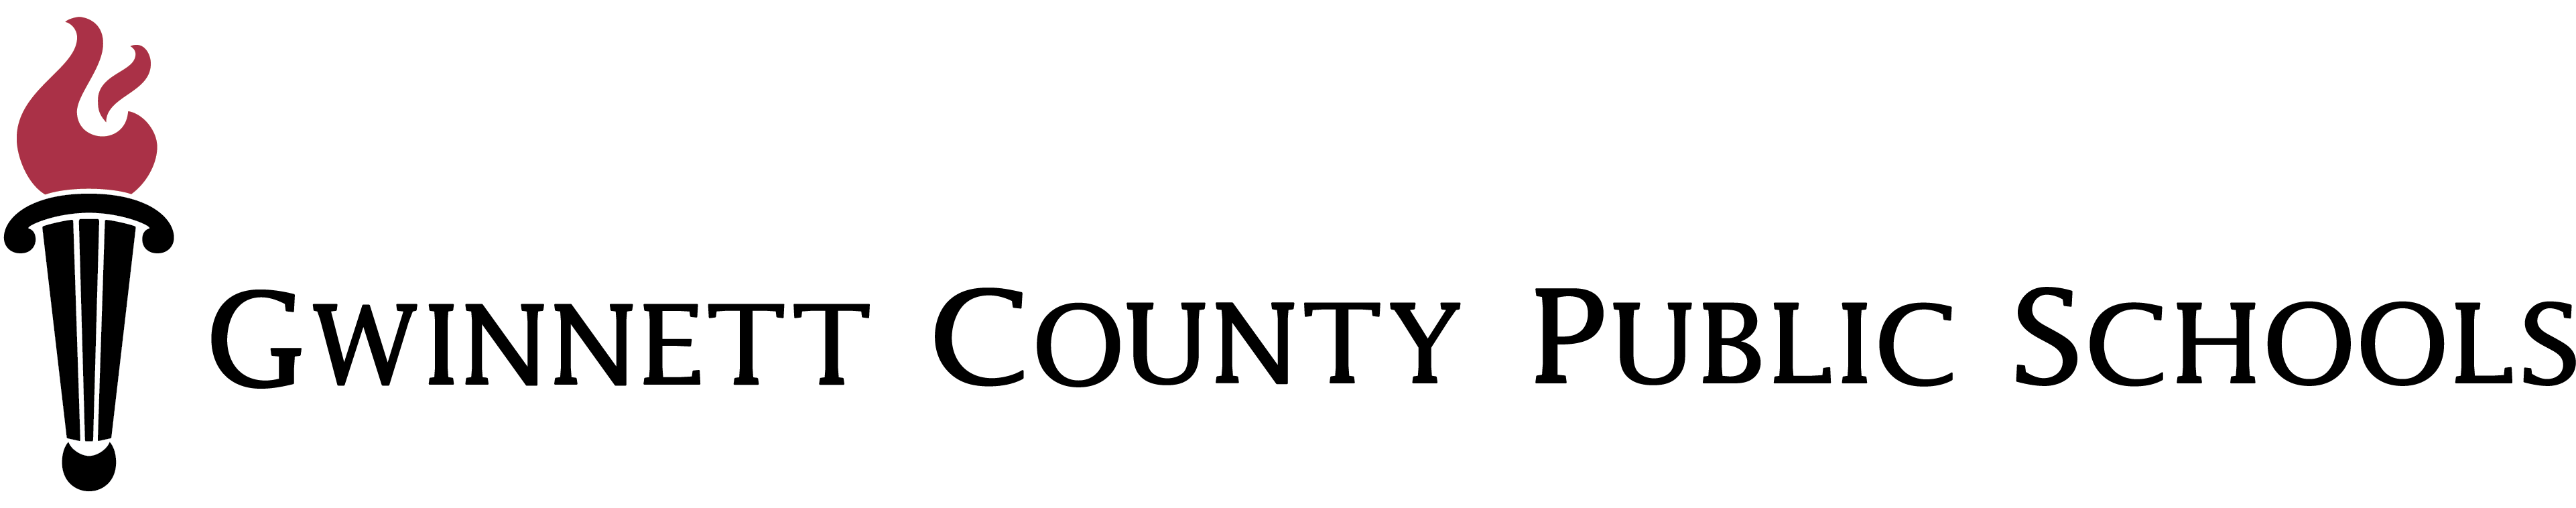 Gwinnett County School District logo